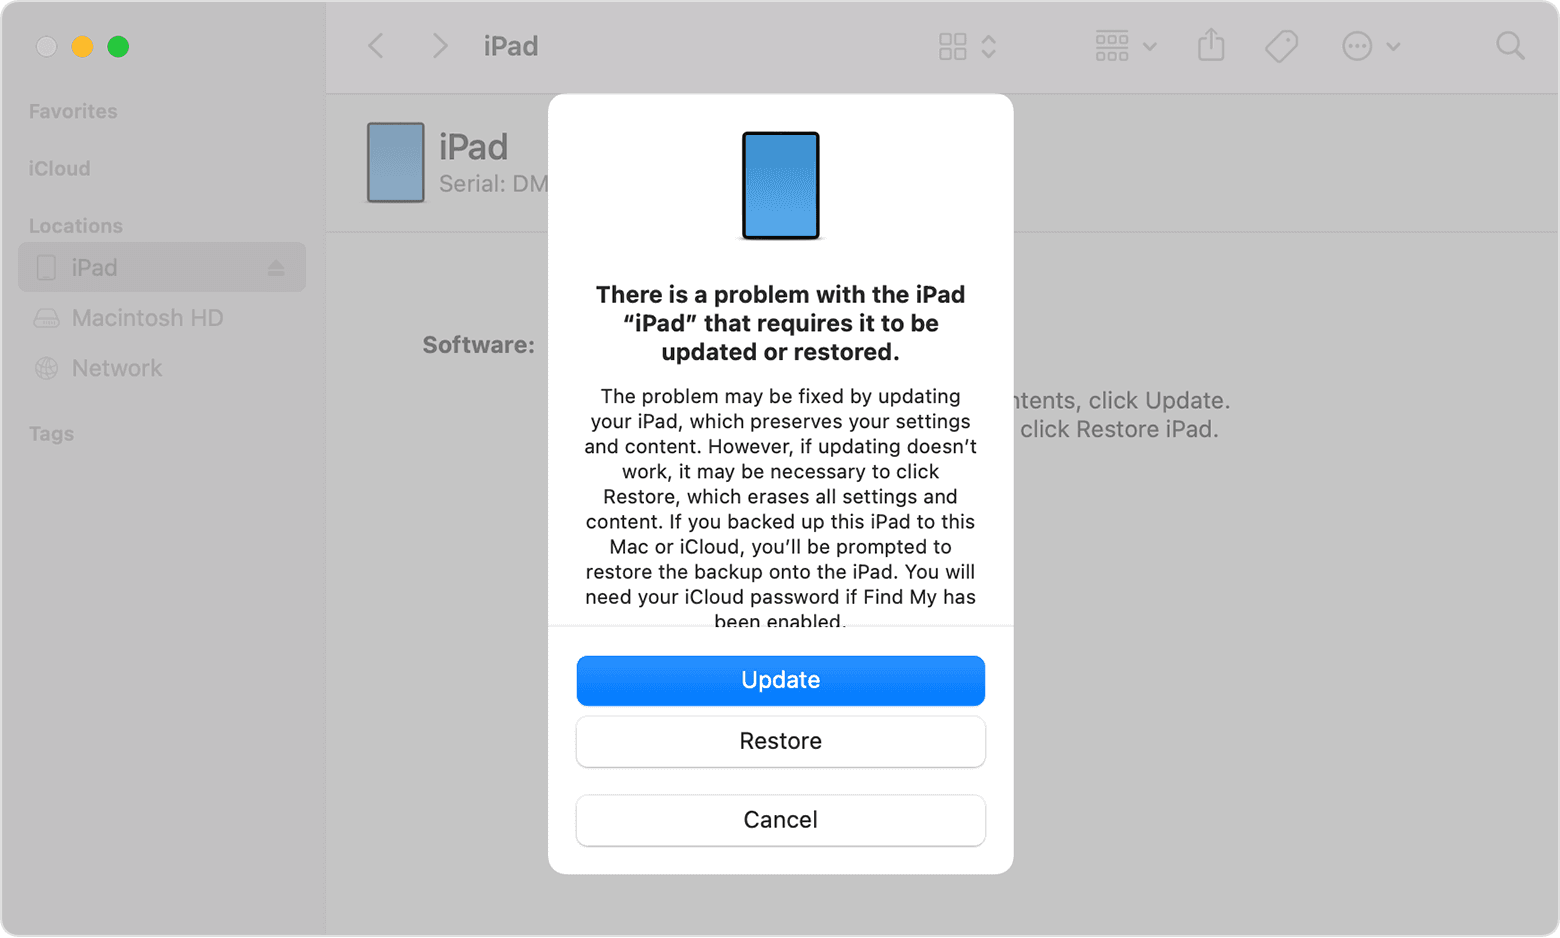 Окно Finder с запросом на обновление или восстановление iPad. Выбрано обновление.